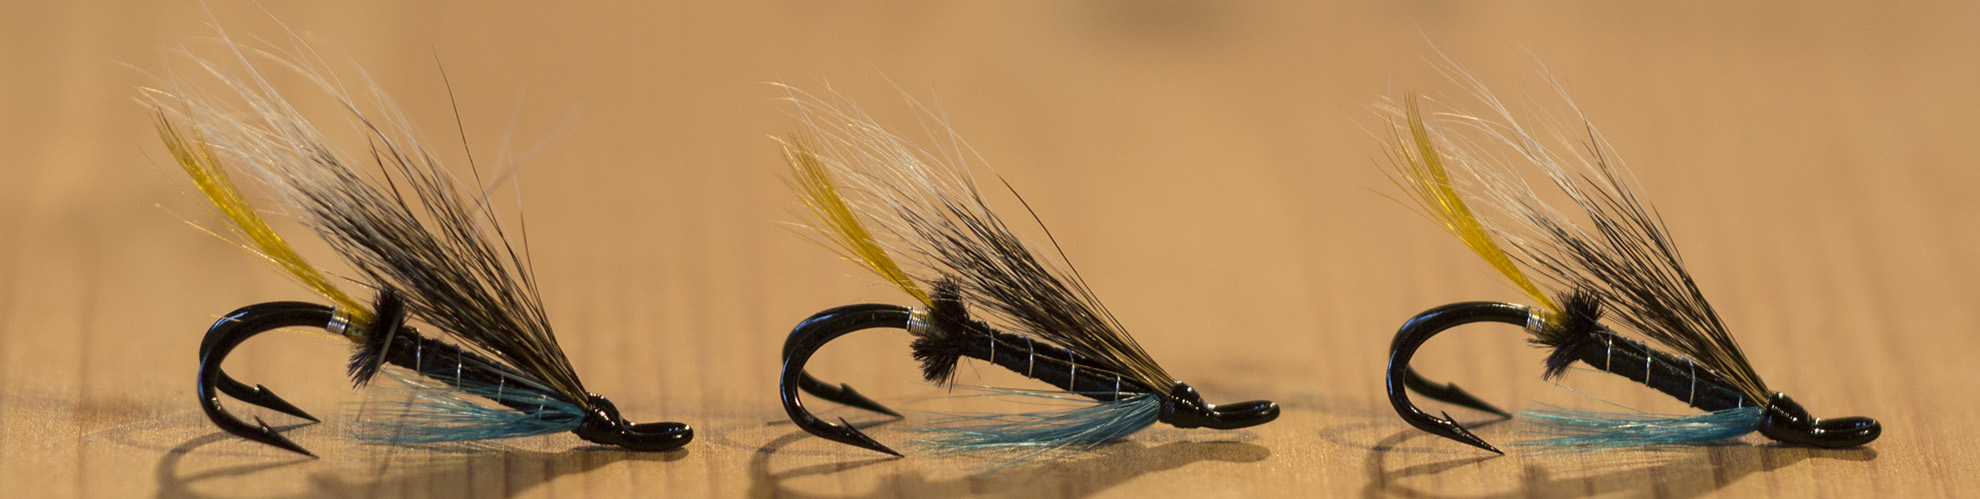 Rosen-fly-fishing-blog-00015